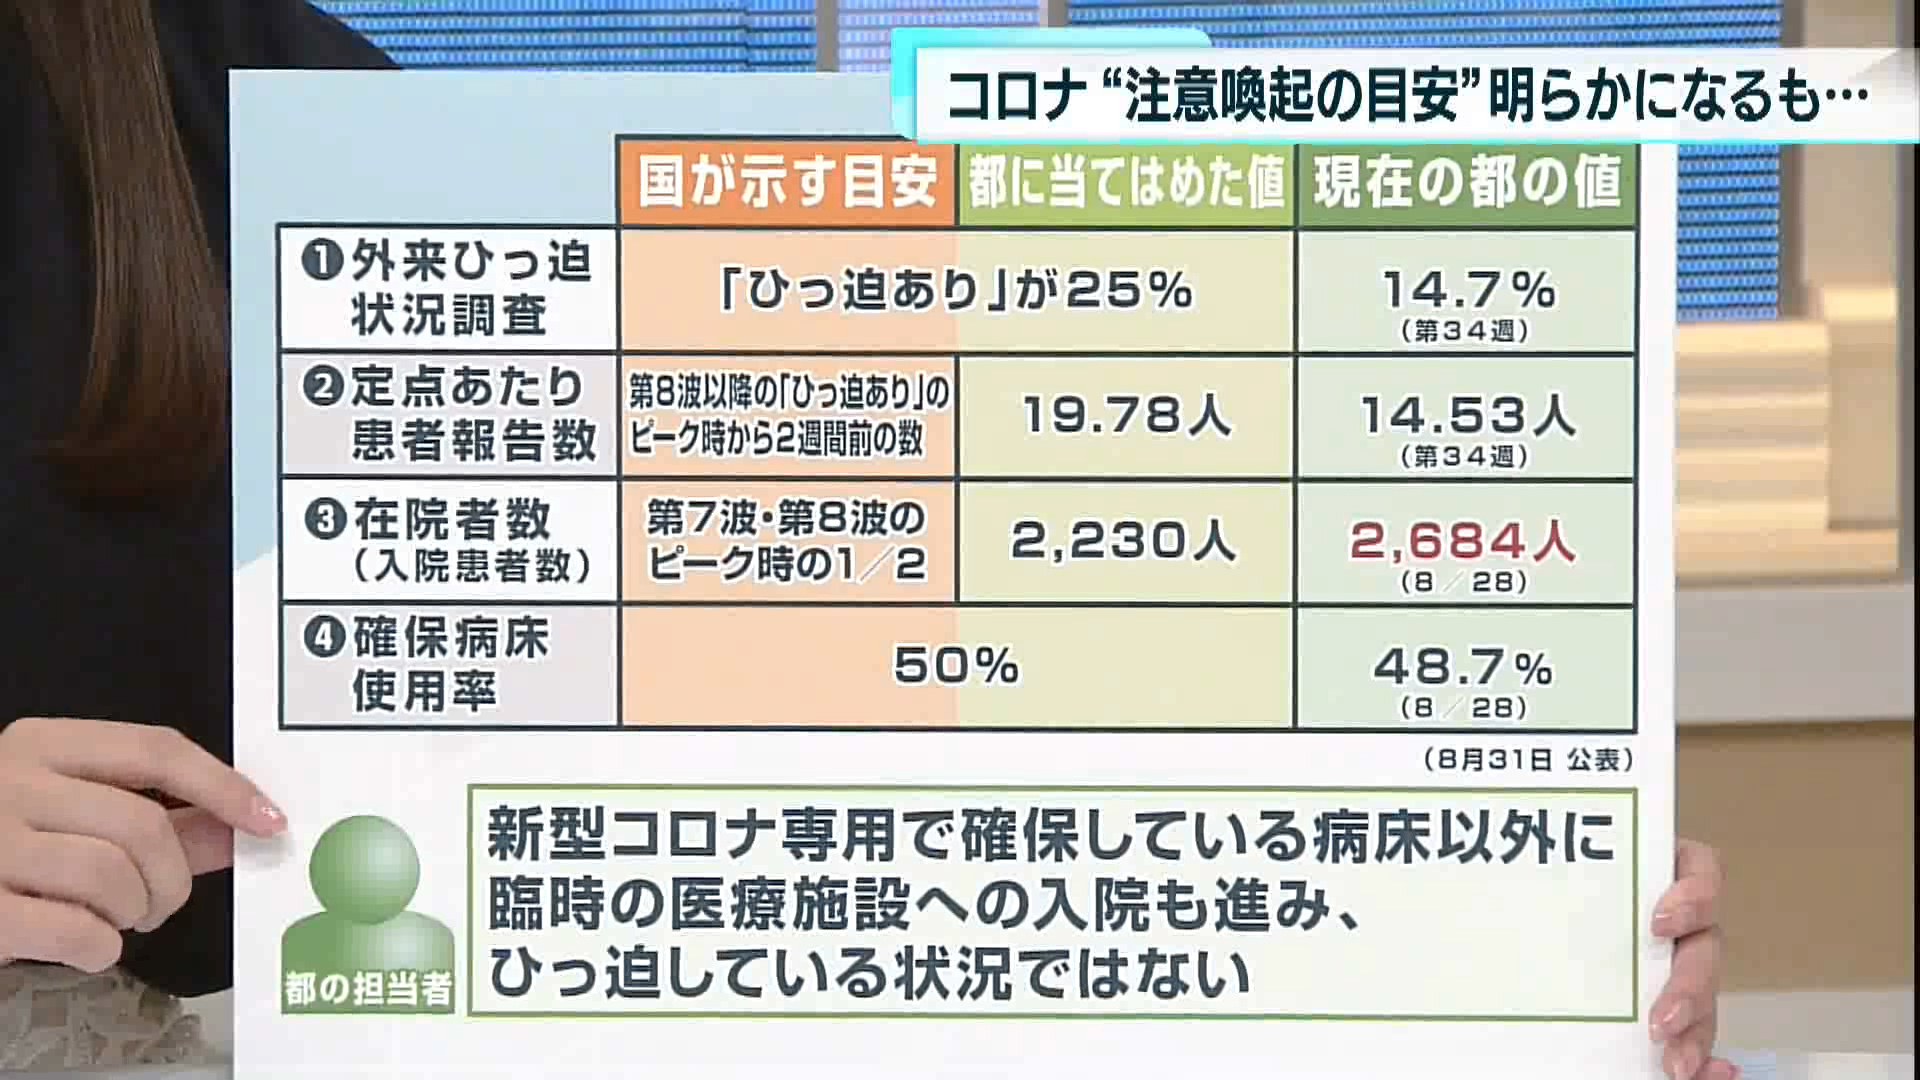 新型コロナウイルスの感染者数について見ていきます。今年5月に5類に移行してから、感染拡大の注意喚起が行われる基準が明確に示されていませんでしたが、国の目安に合わせる形で東京都の数字が明らかになりました。

